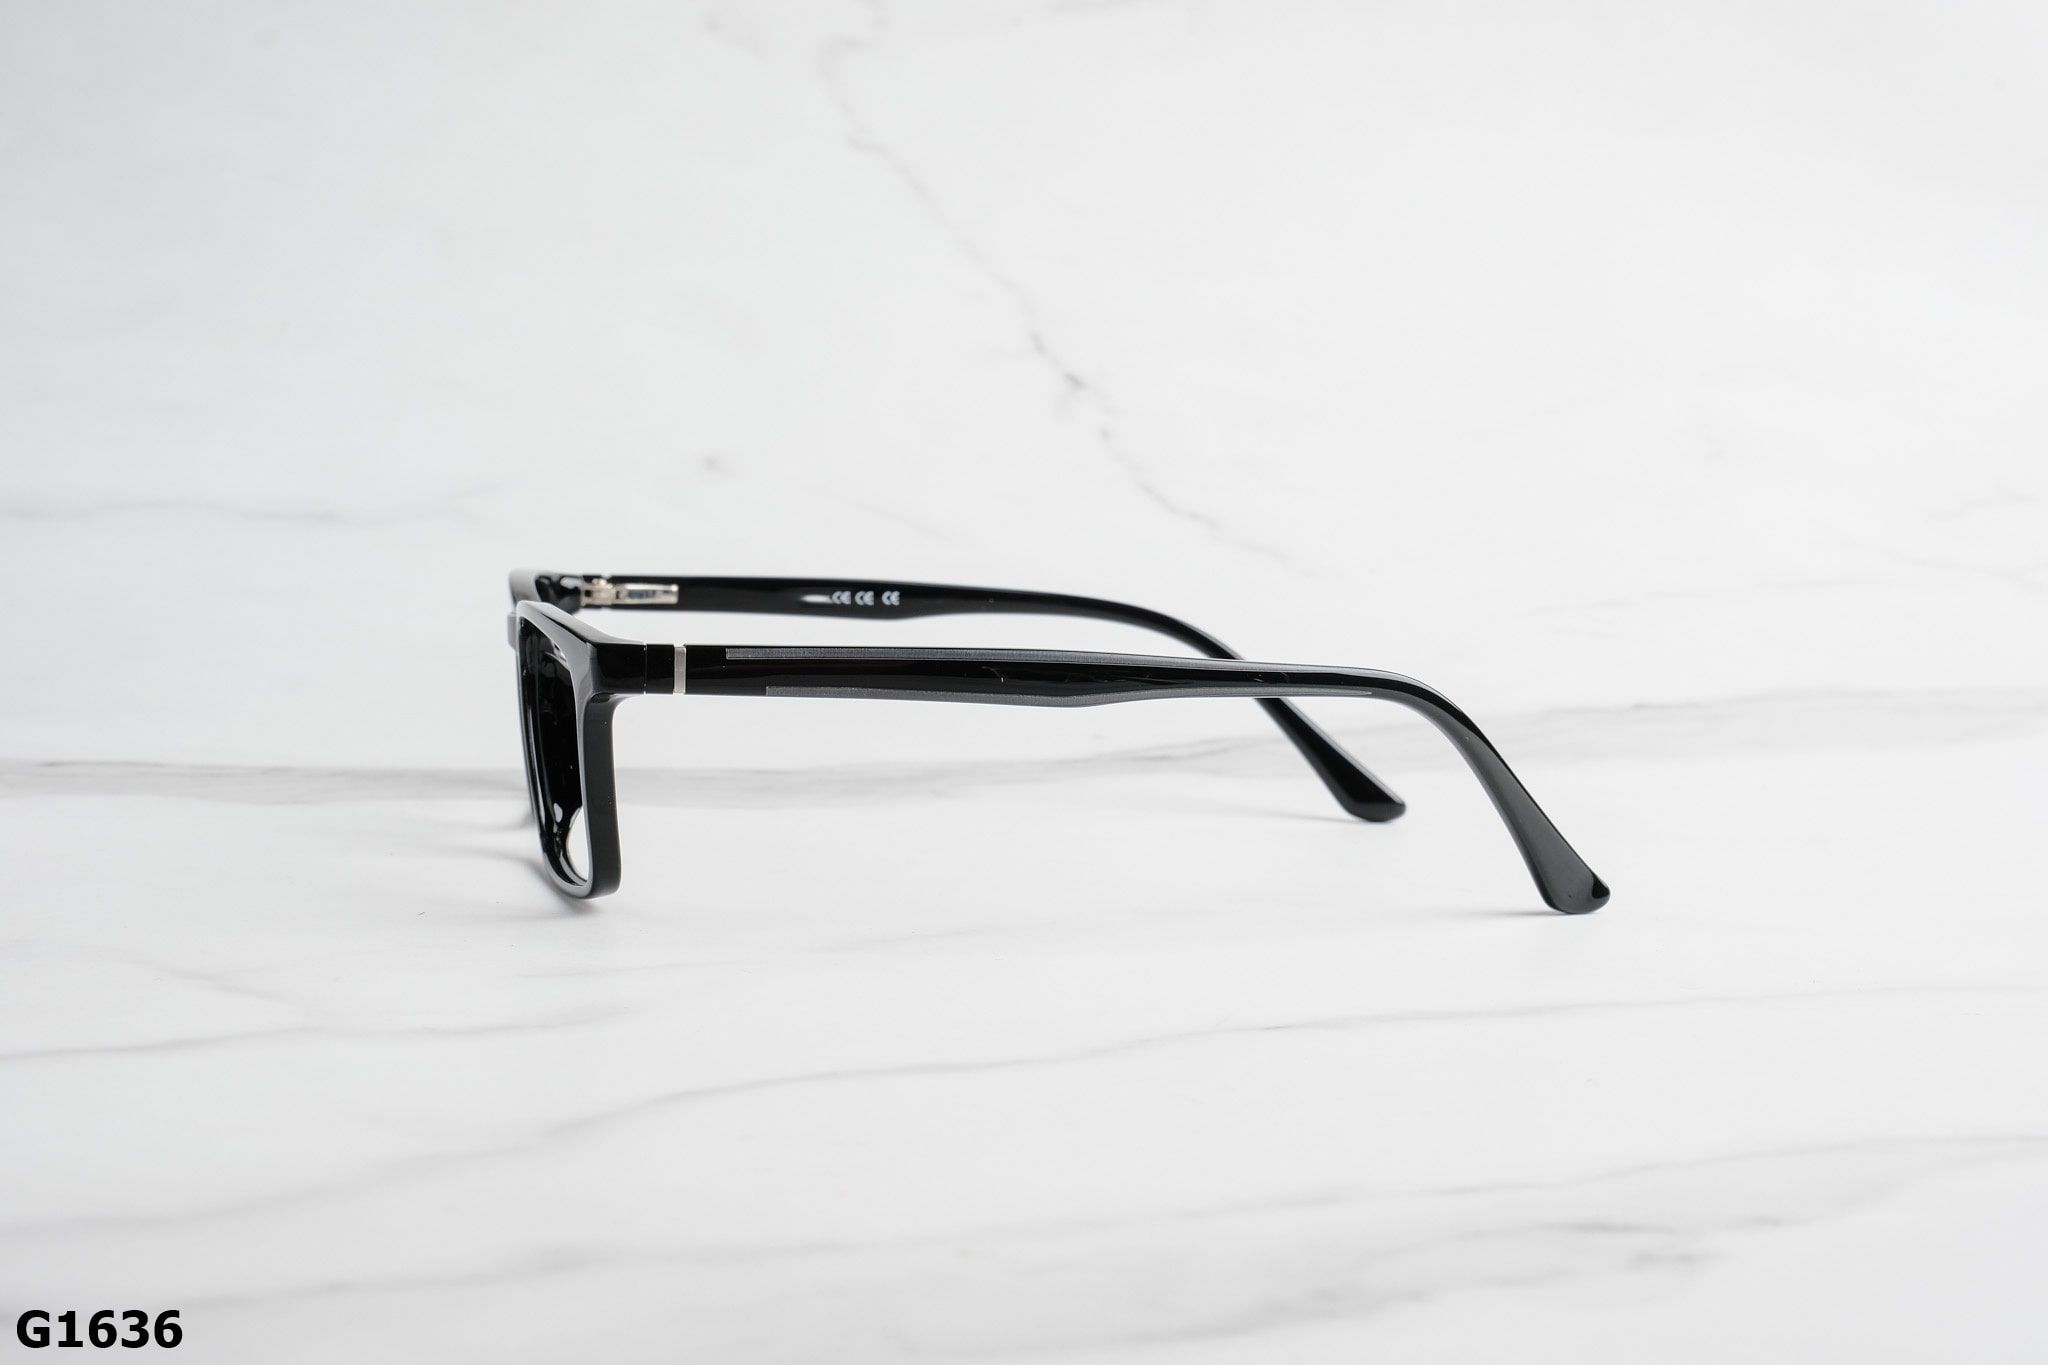  Rex-ton Eyewear - Glasses - G1636 